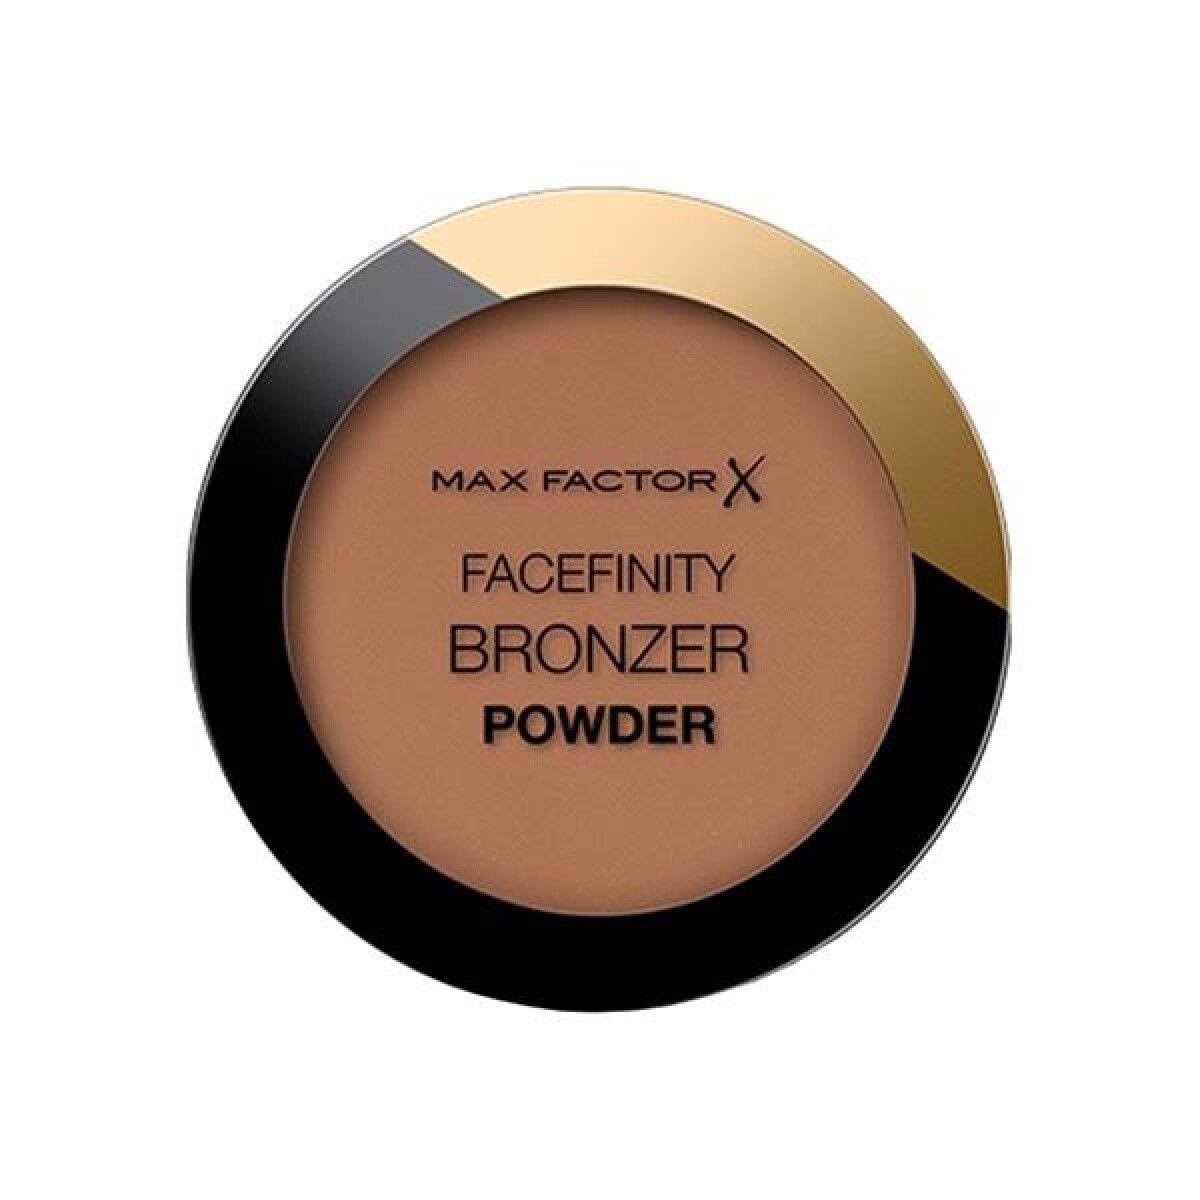 Max Factor Facefinity Powder Bronzer #002 Warm T 